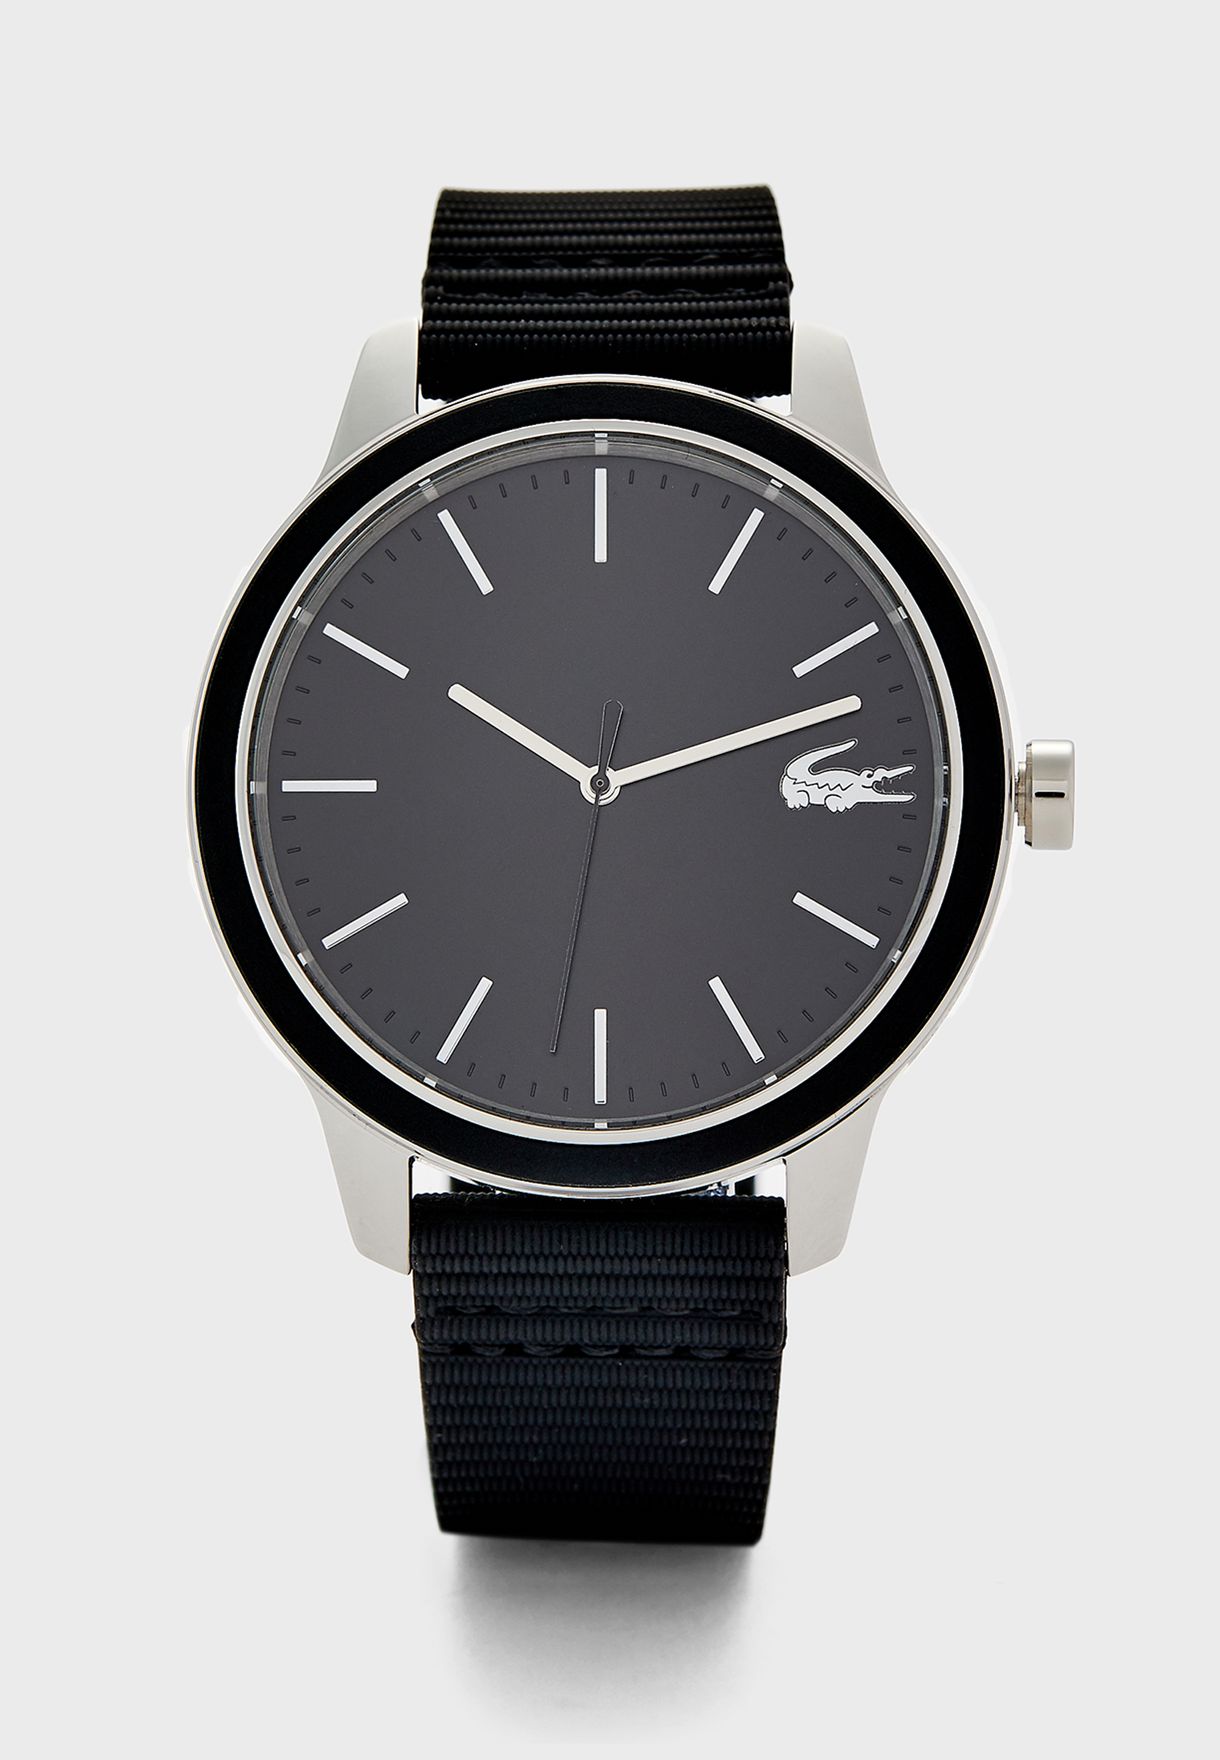 lacoste 12.12 black watch